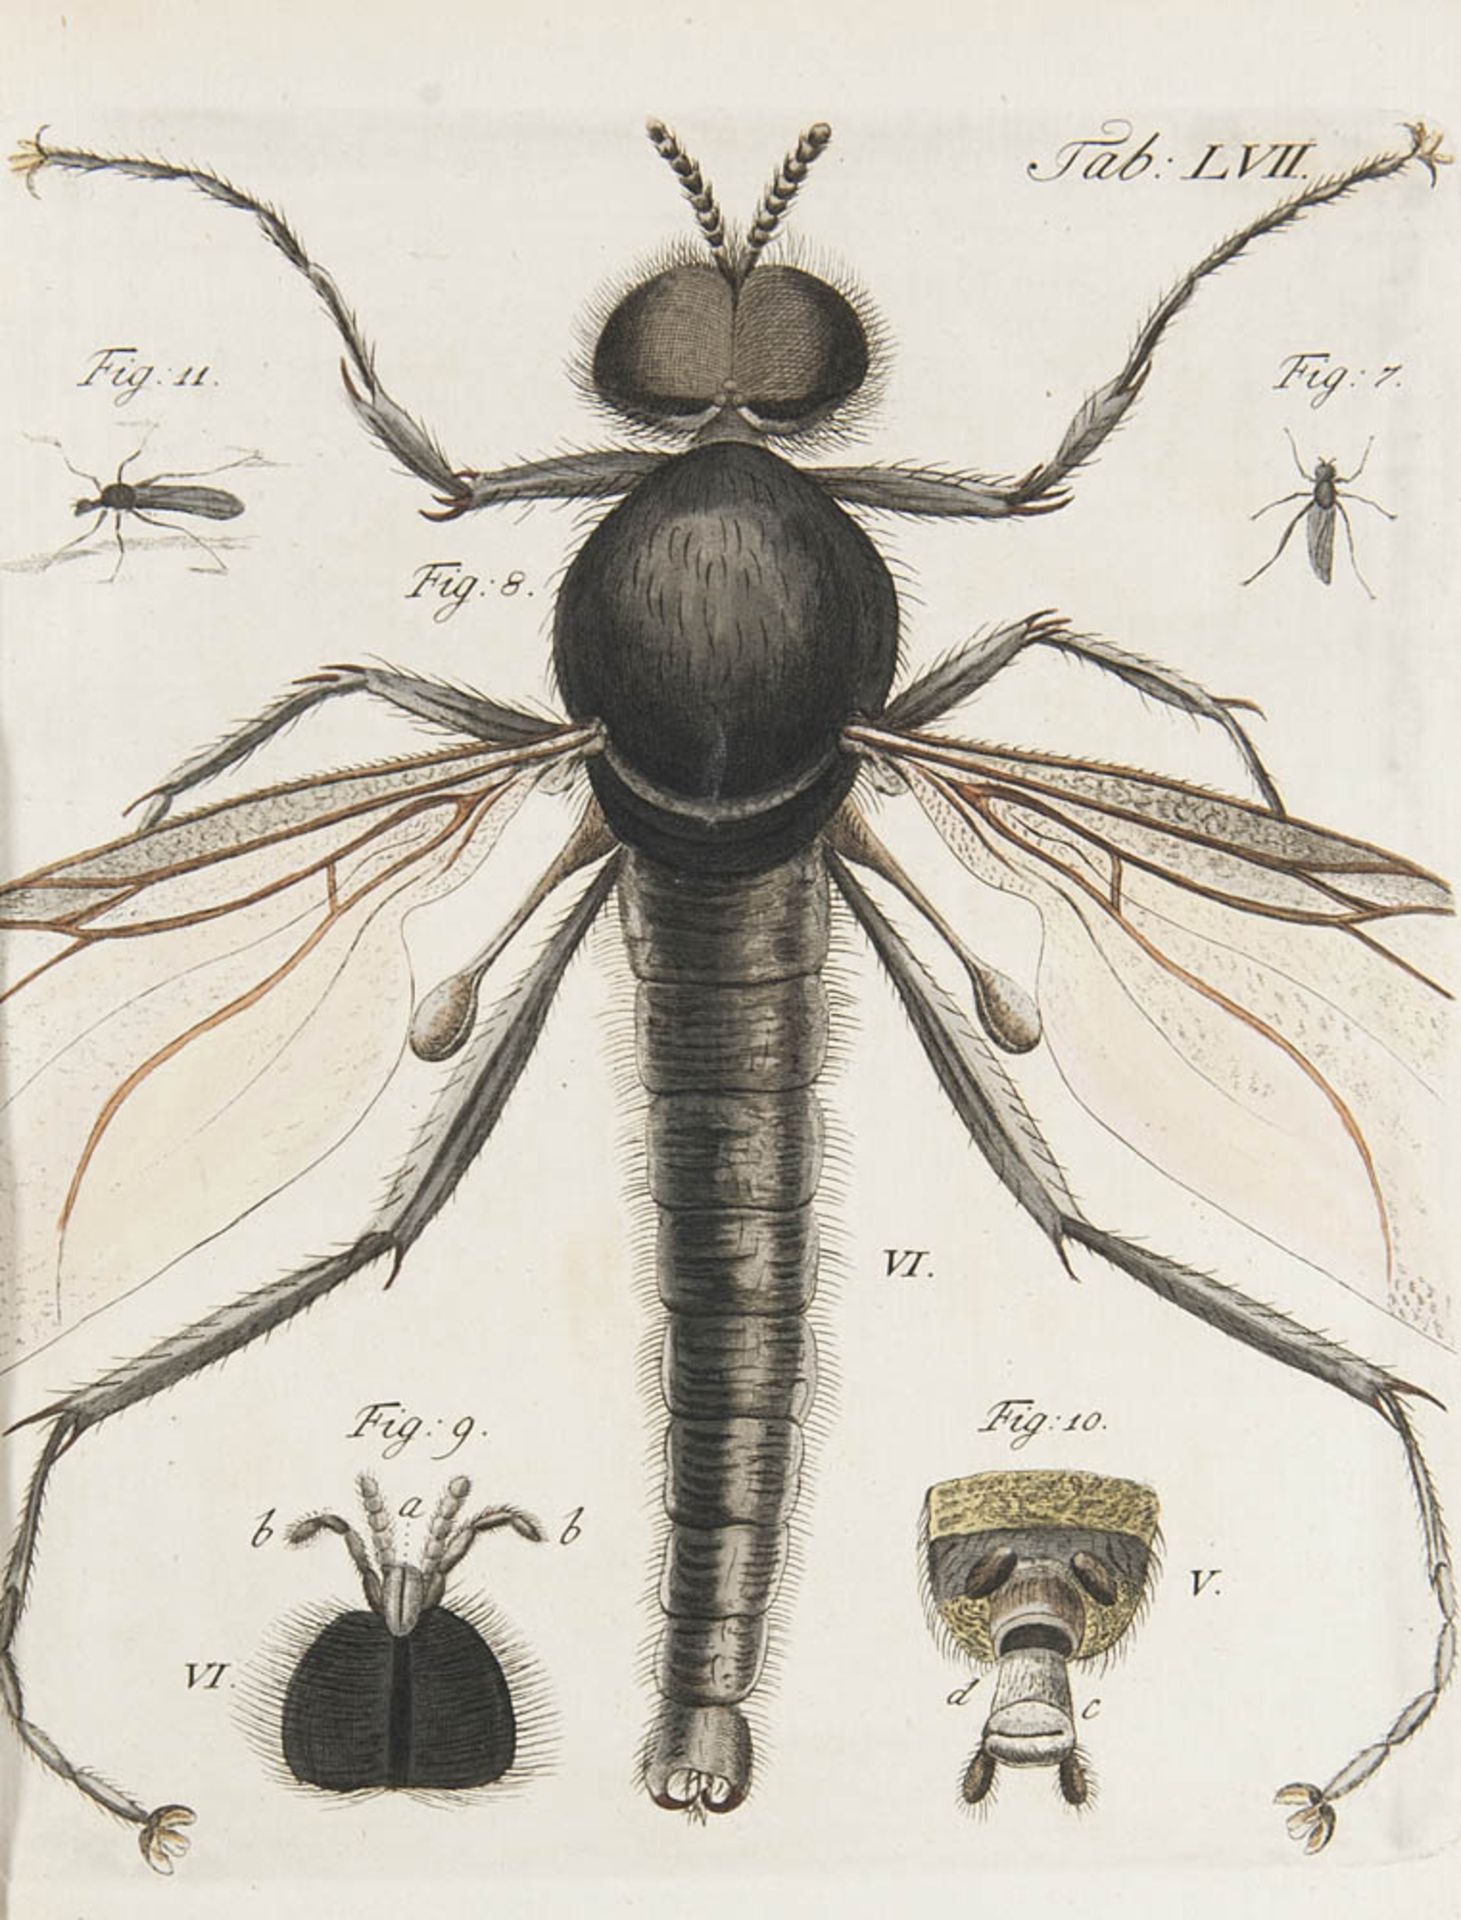 Botanik - - Gleichen (gen. Rußworm), Wilhelm Friedrich Frhr. von. Auserlesene mikroskopische